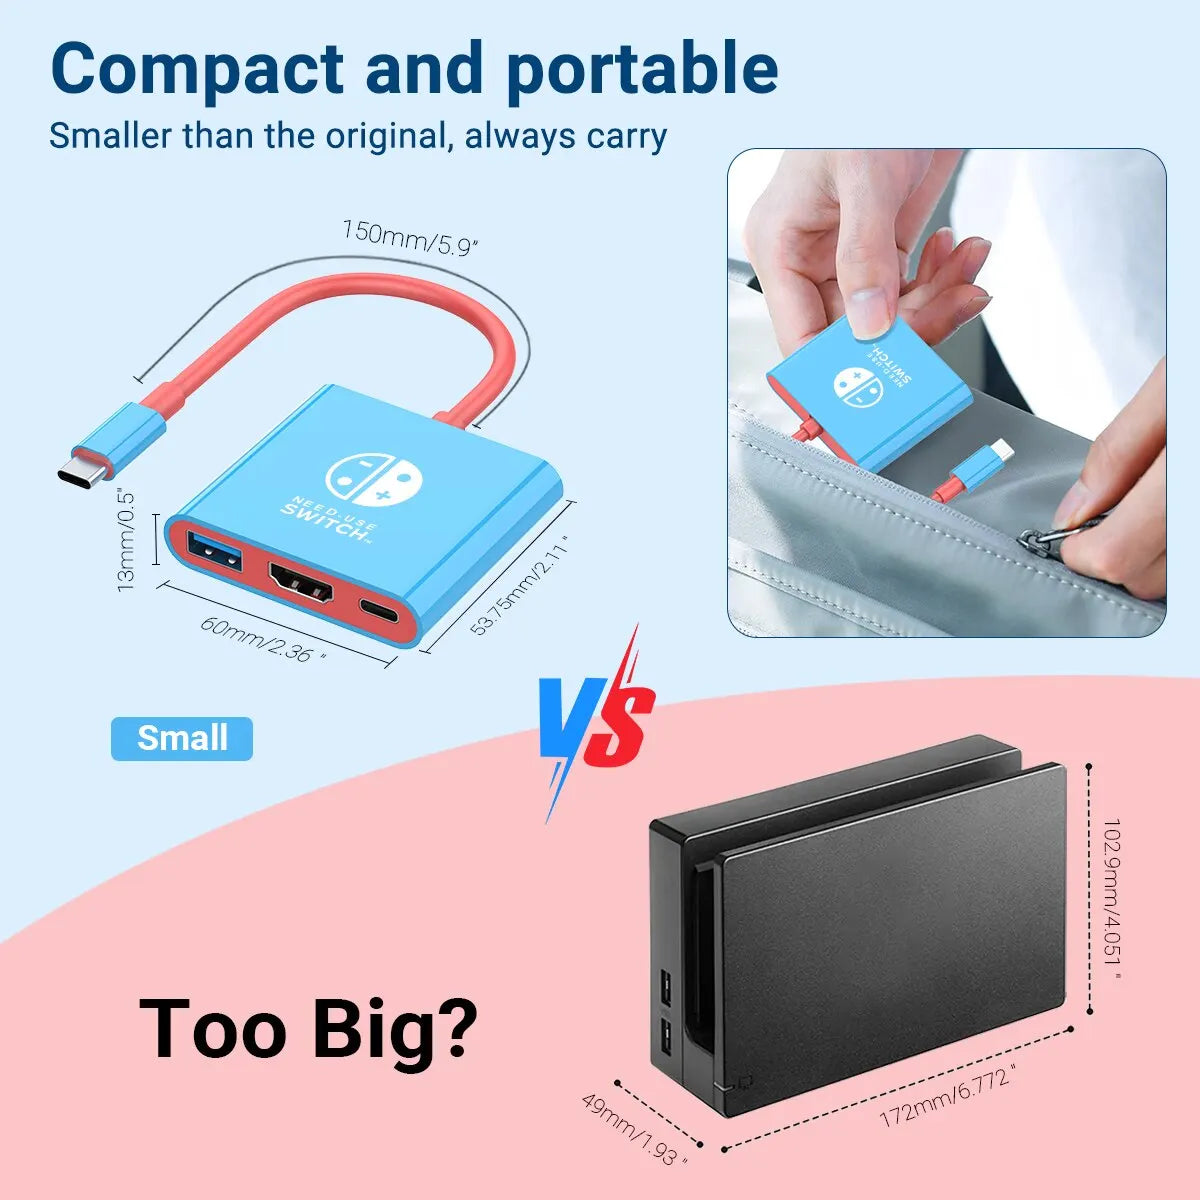 Adaptador de múltiplas portas XIBUZZ 3 em 1 compatível com Nintendo Switch - Hub USB-C com HDMI e USB 3.0 perfeito para viagens e jogos